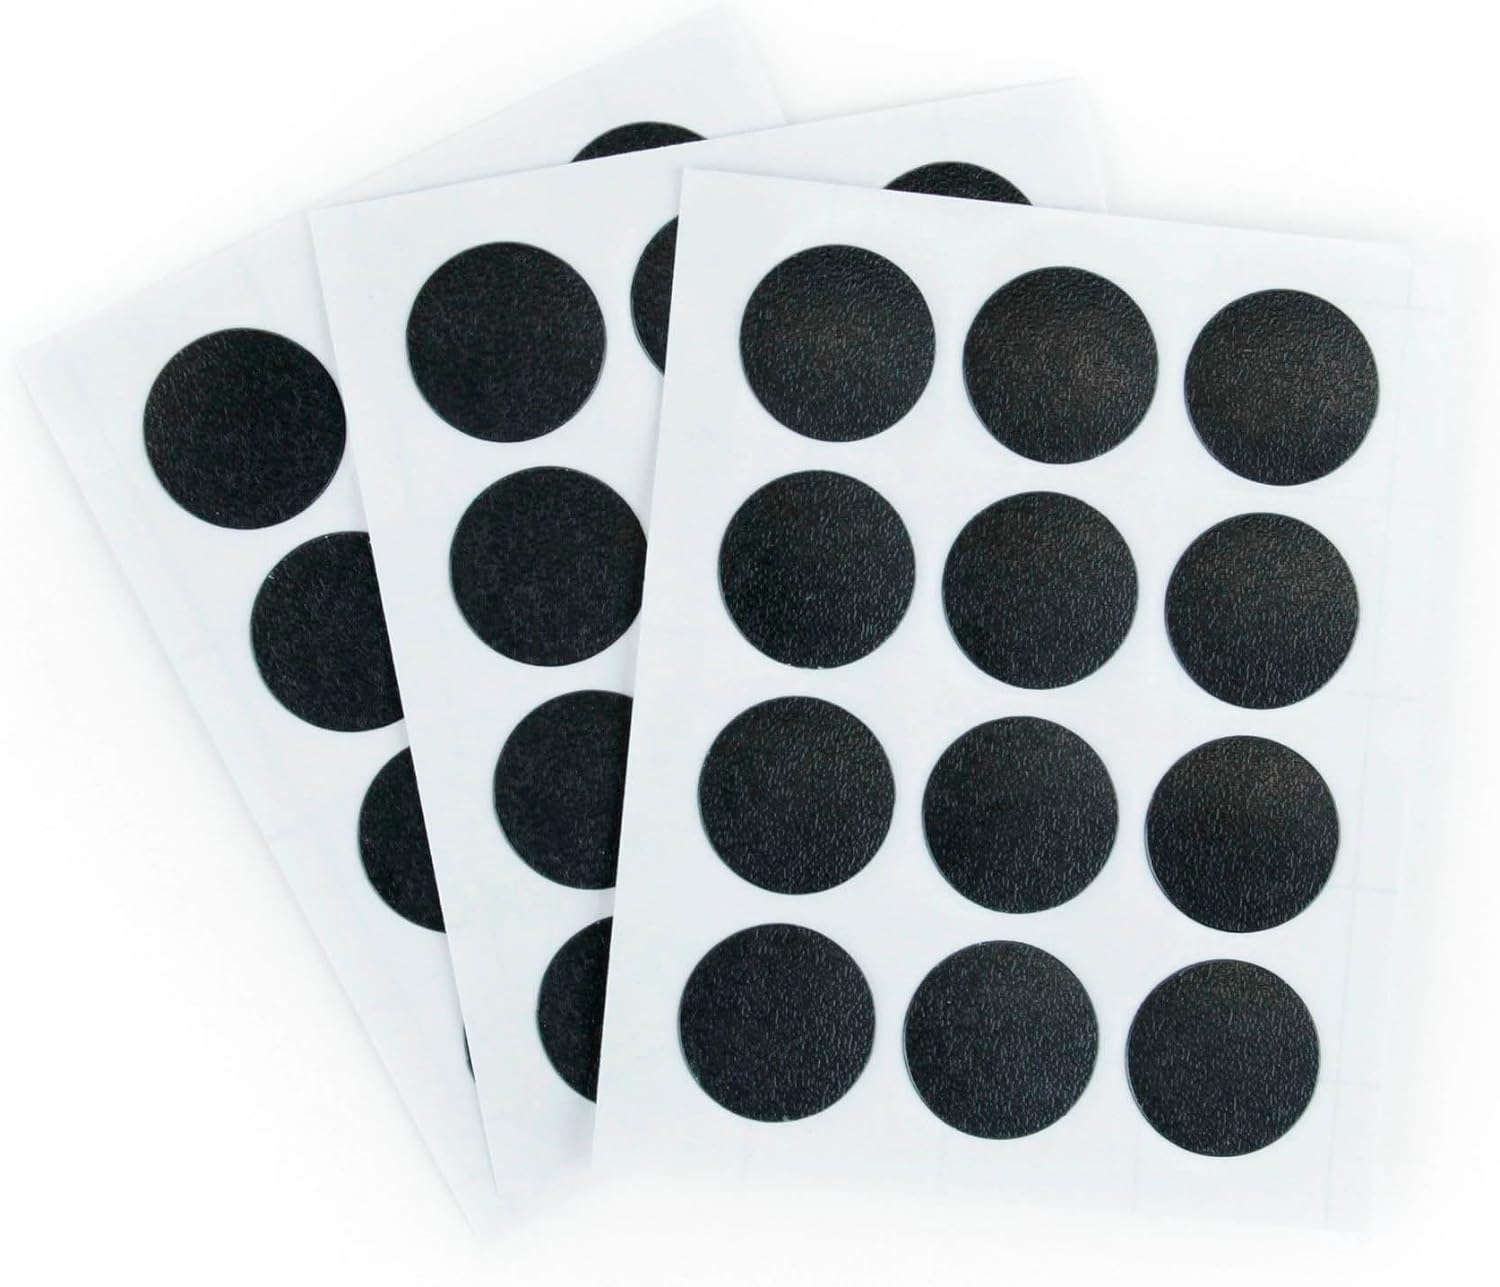 Furndiy Self-Adhesive Screw Cover Caps (Black)